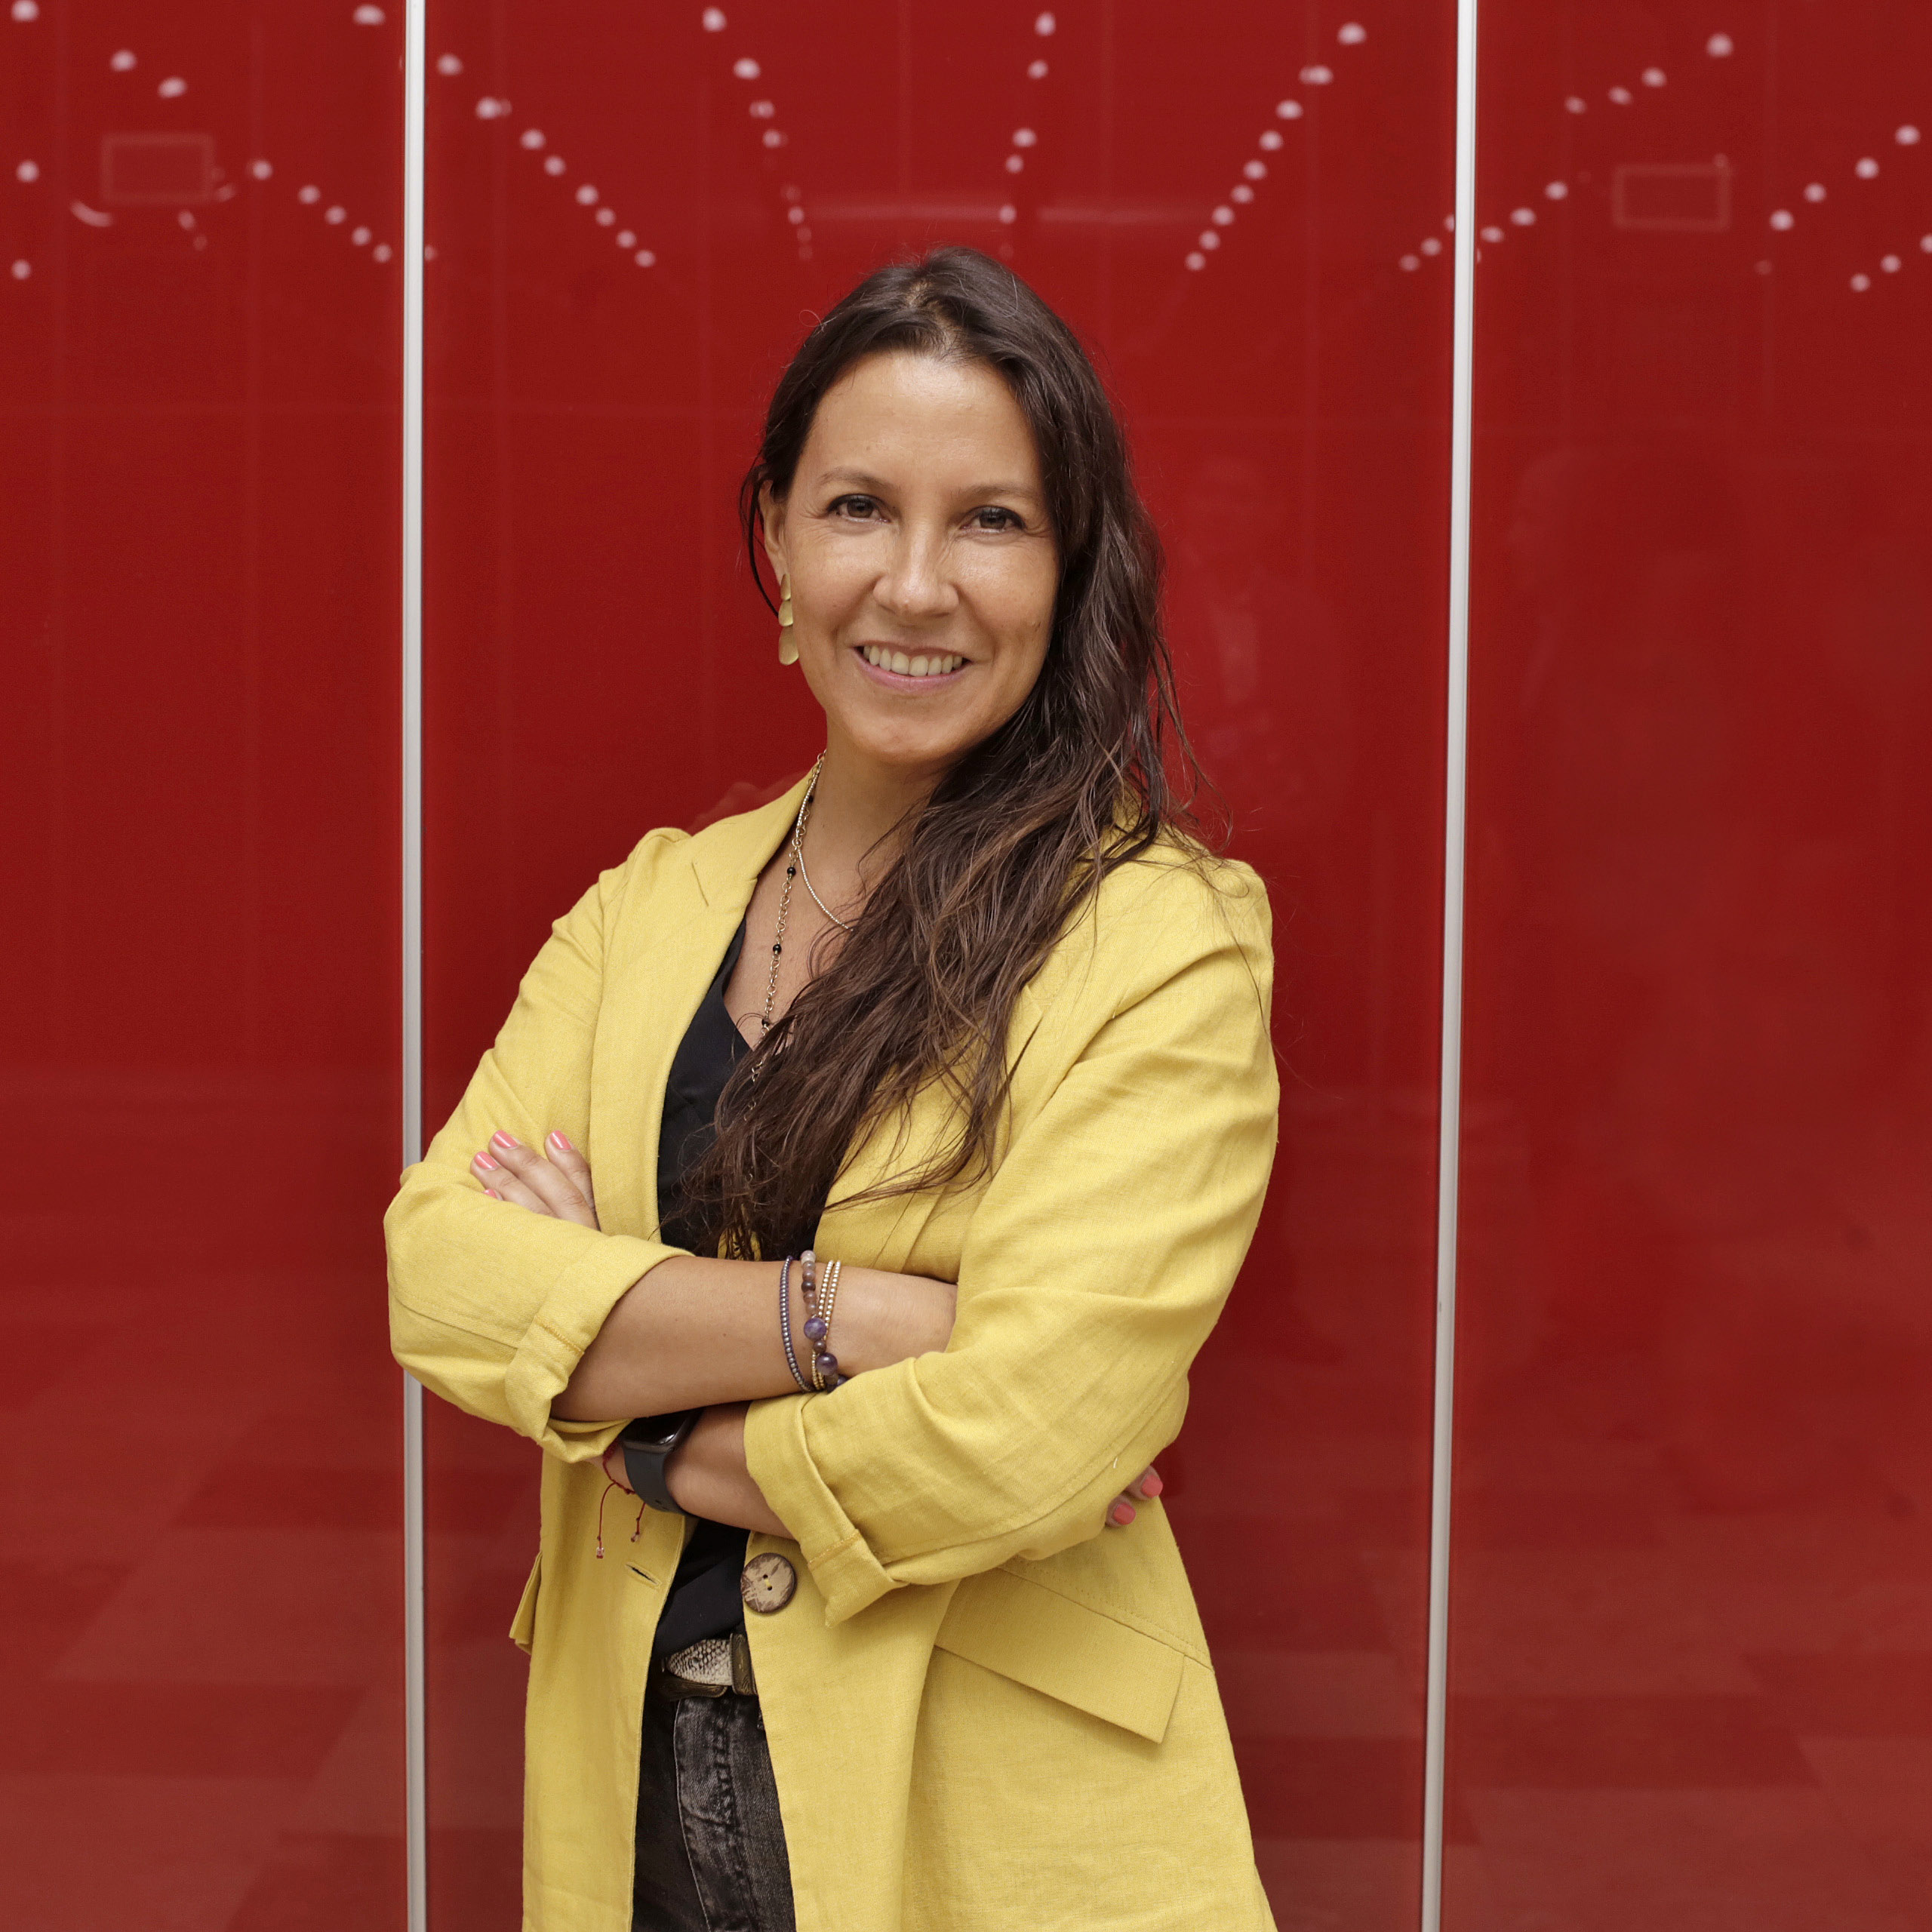 Carolina Garafulich, nueva presidenta de Construye2025: “Espero que estar en este rol inspire a más mujeres del rubro a sumarse a los desafíos”